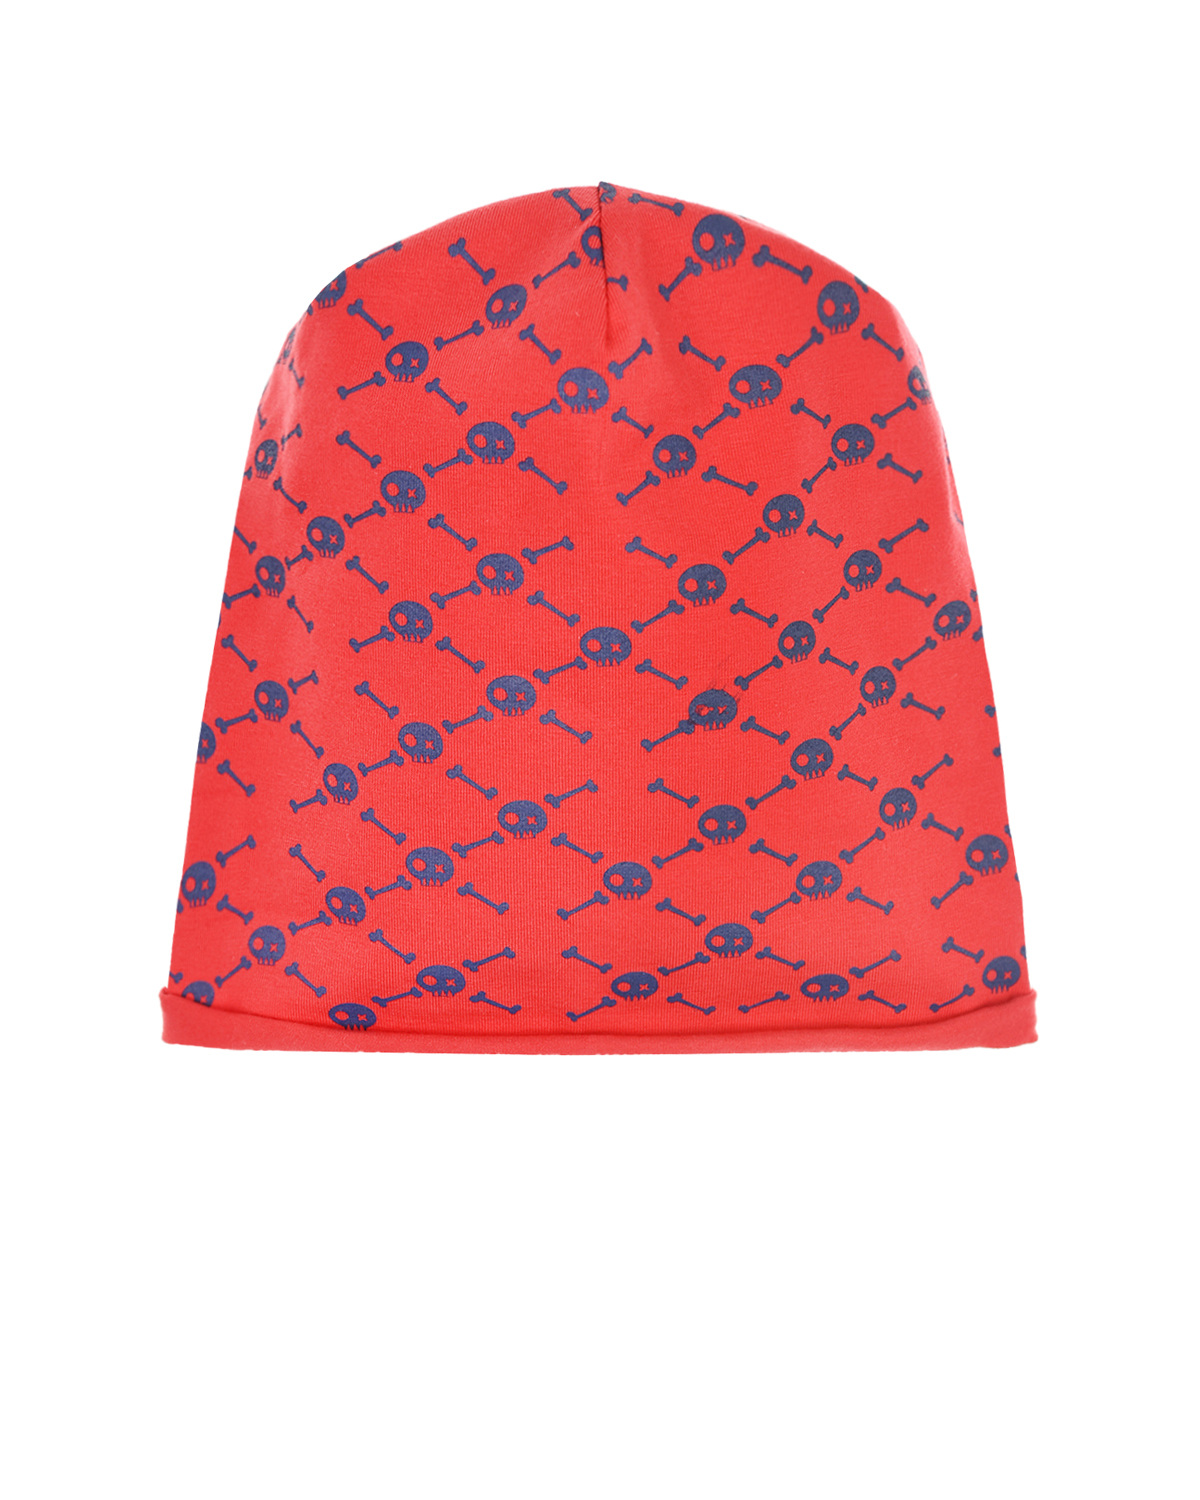 Красная шапка с принтом "Кости и черепа" Catya детская, размер 49, цвет красный - фото 1